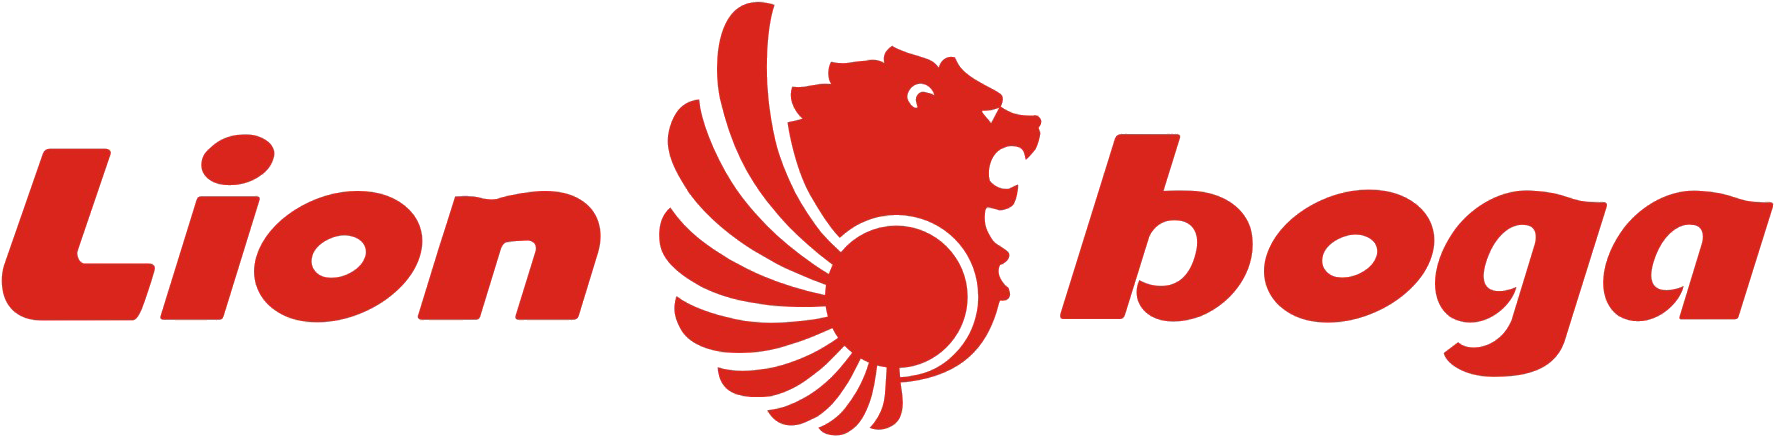 Aerotechnic, Batikair, Lionair, Lionboga, Wingsair - Lion Air Group Logo (1793x447)